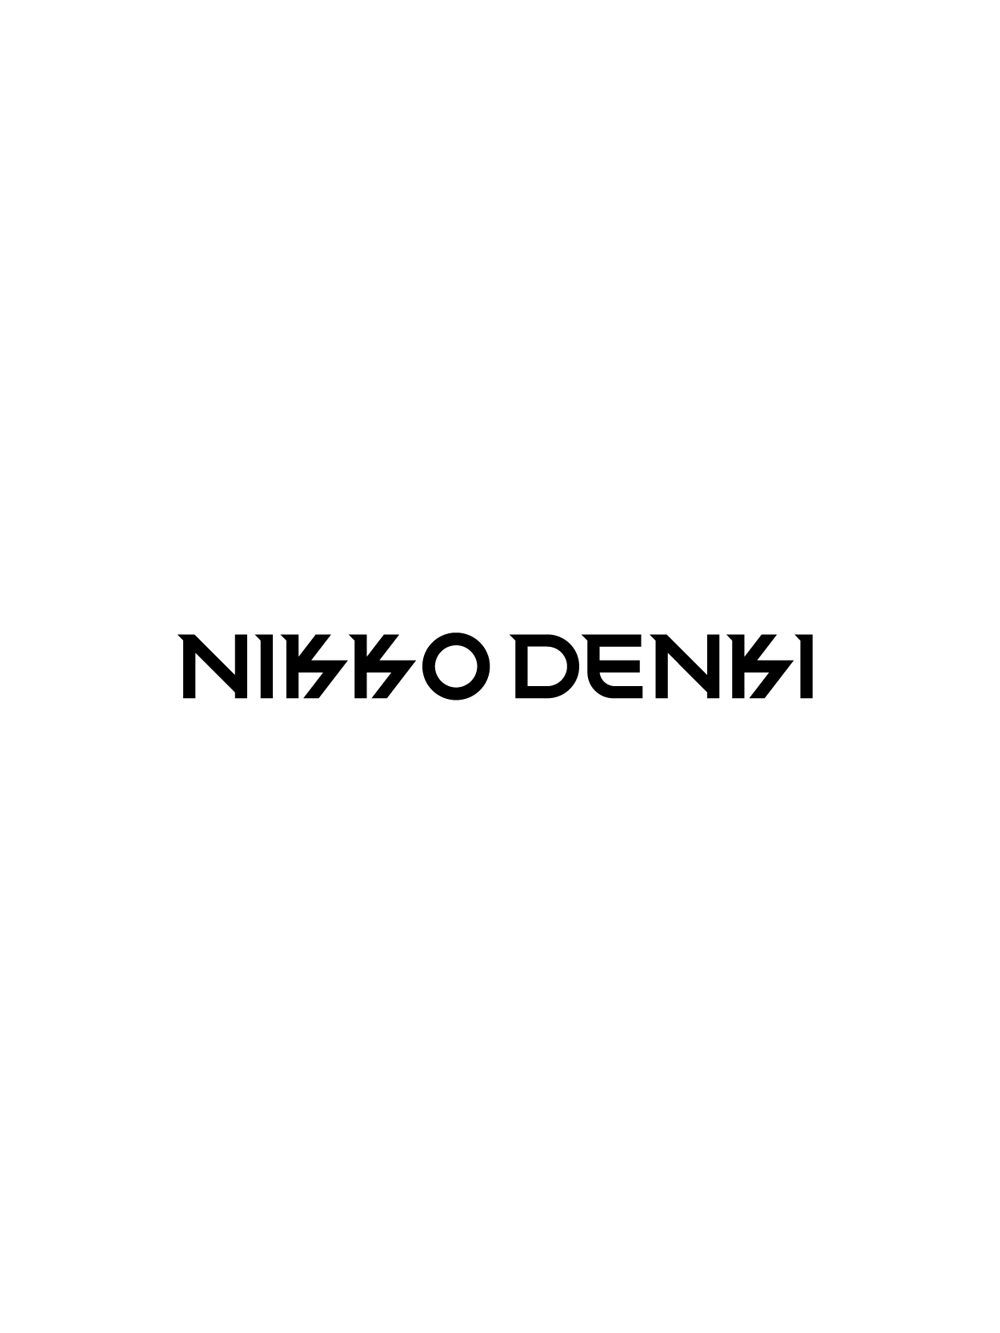 NIKKO DENKI-01.png